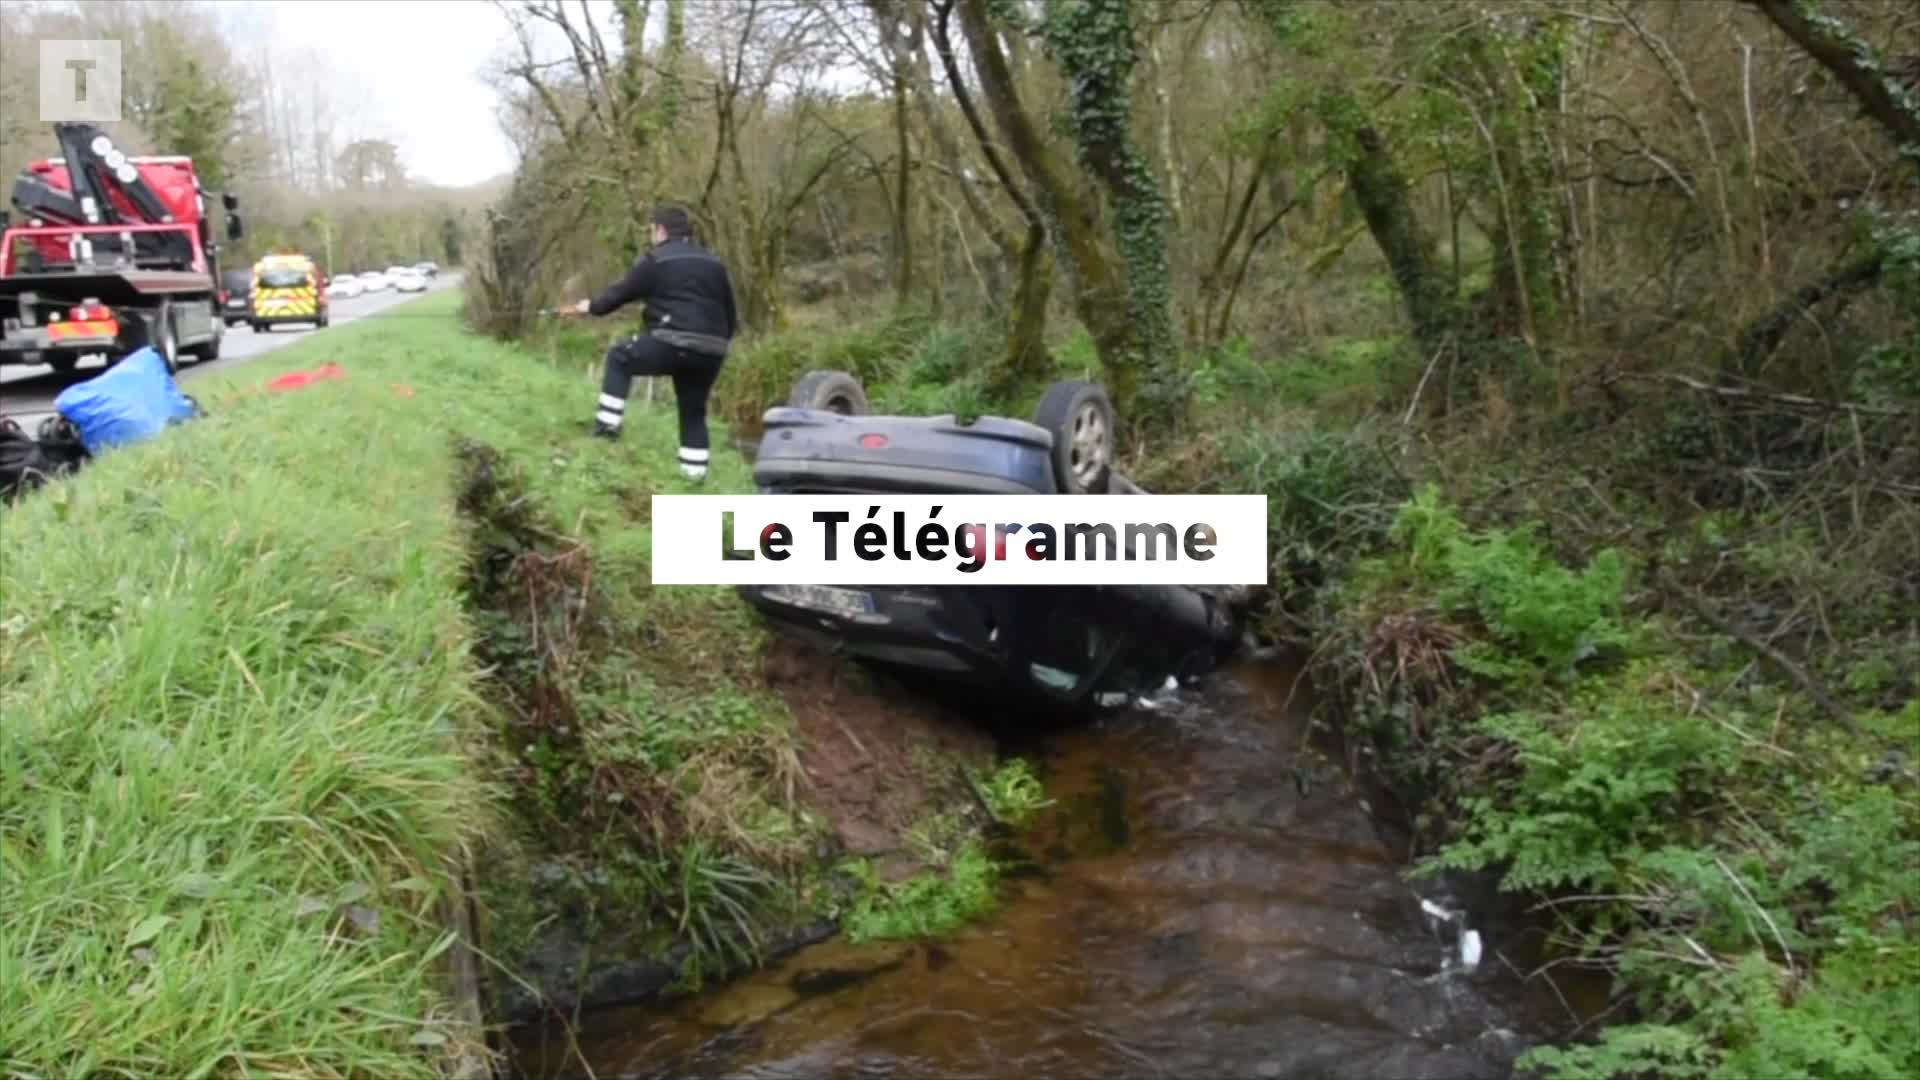 À Dirinon, une voiture dans un ruisseau mais personne à bord (Le Télégramme)